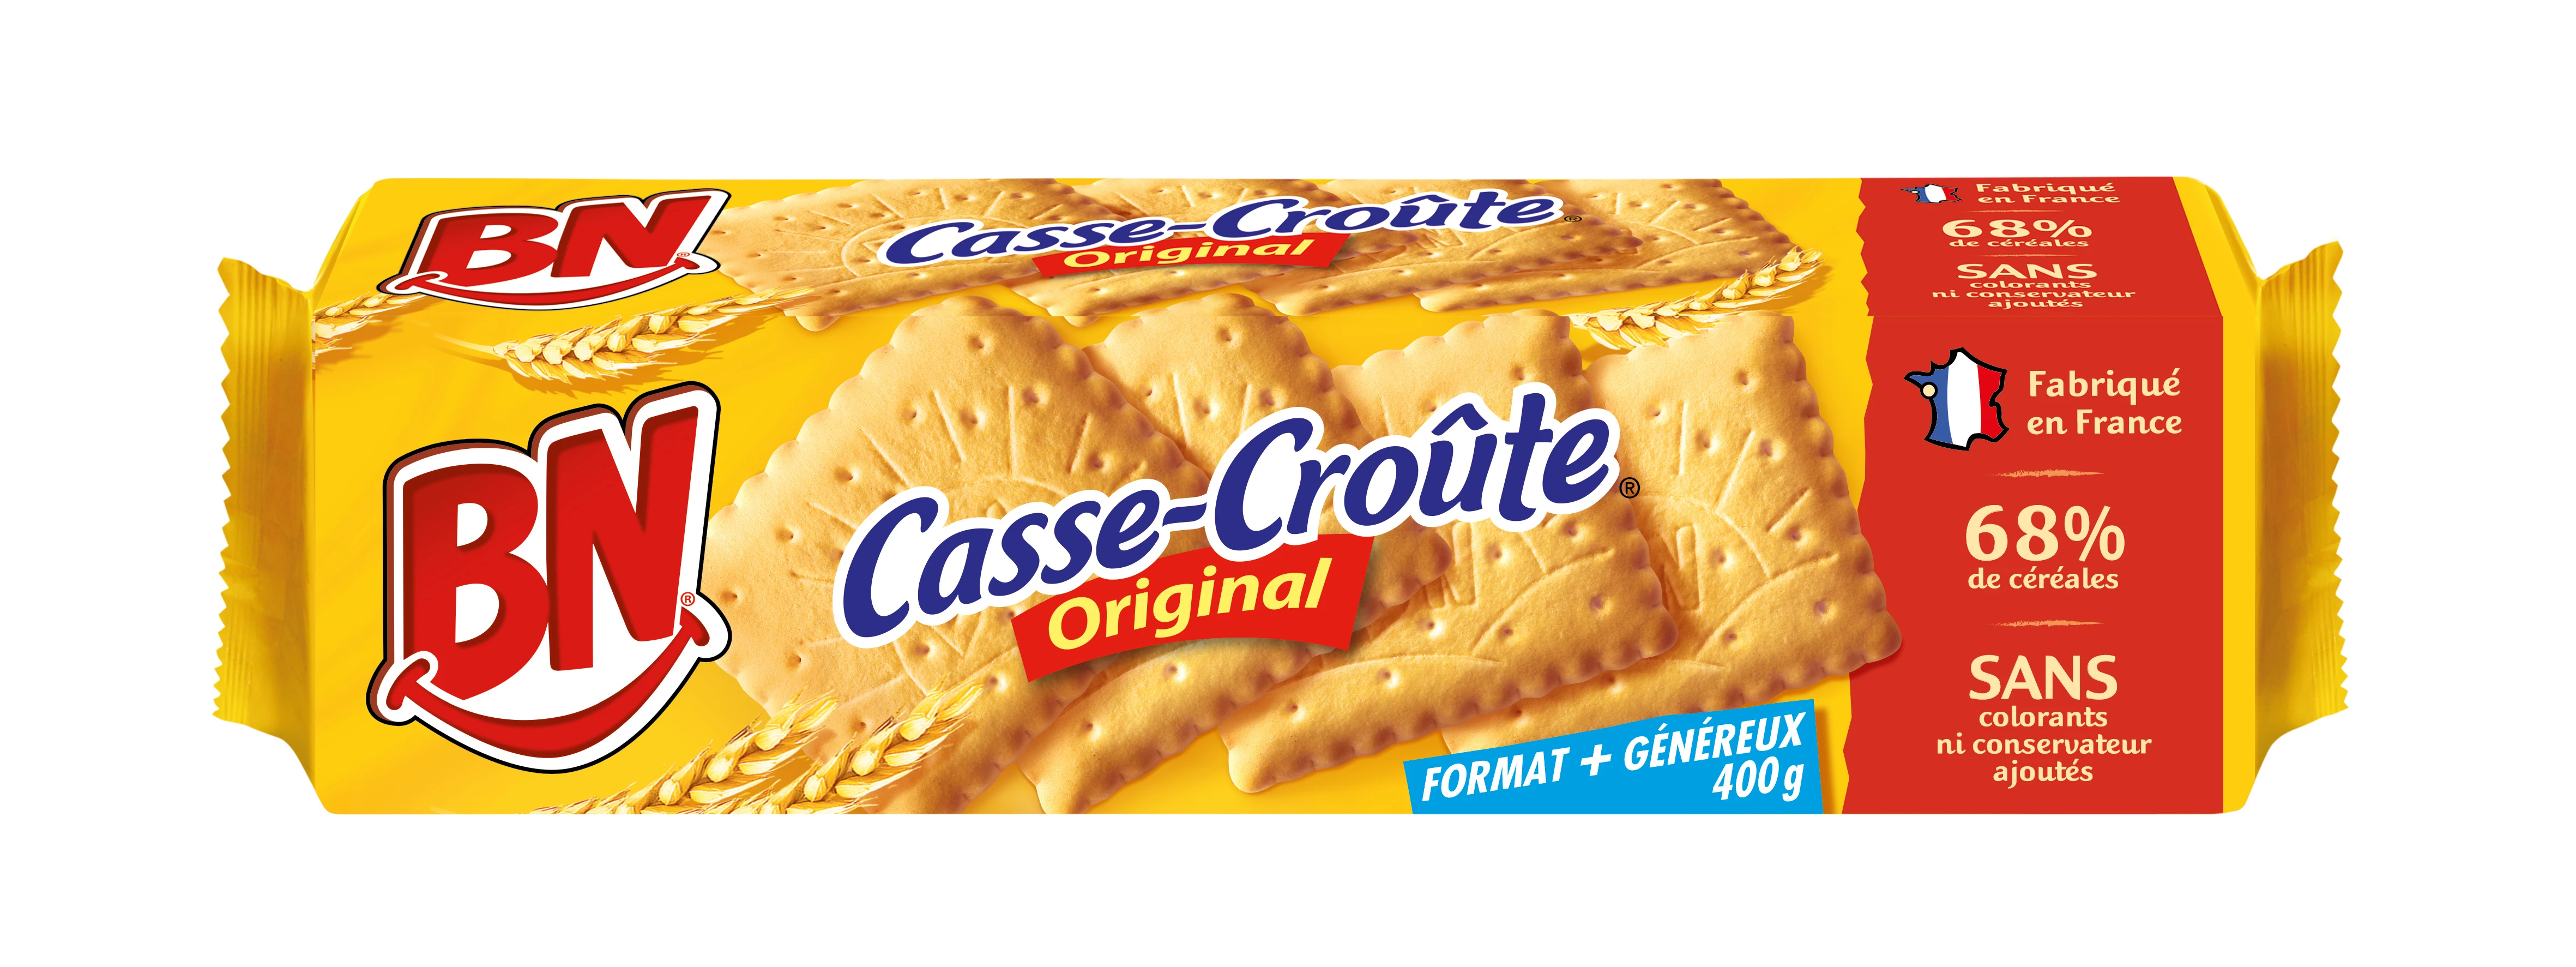 Печенье Casse Croute для завтрака 400г - BN